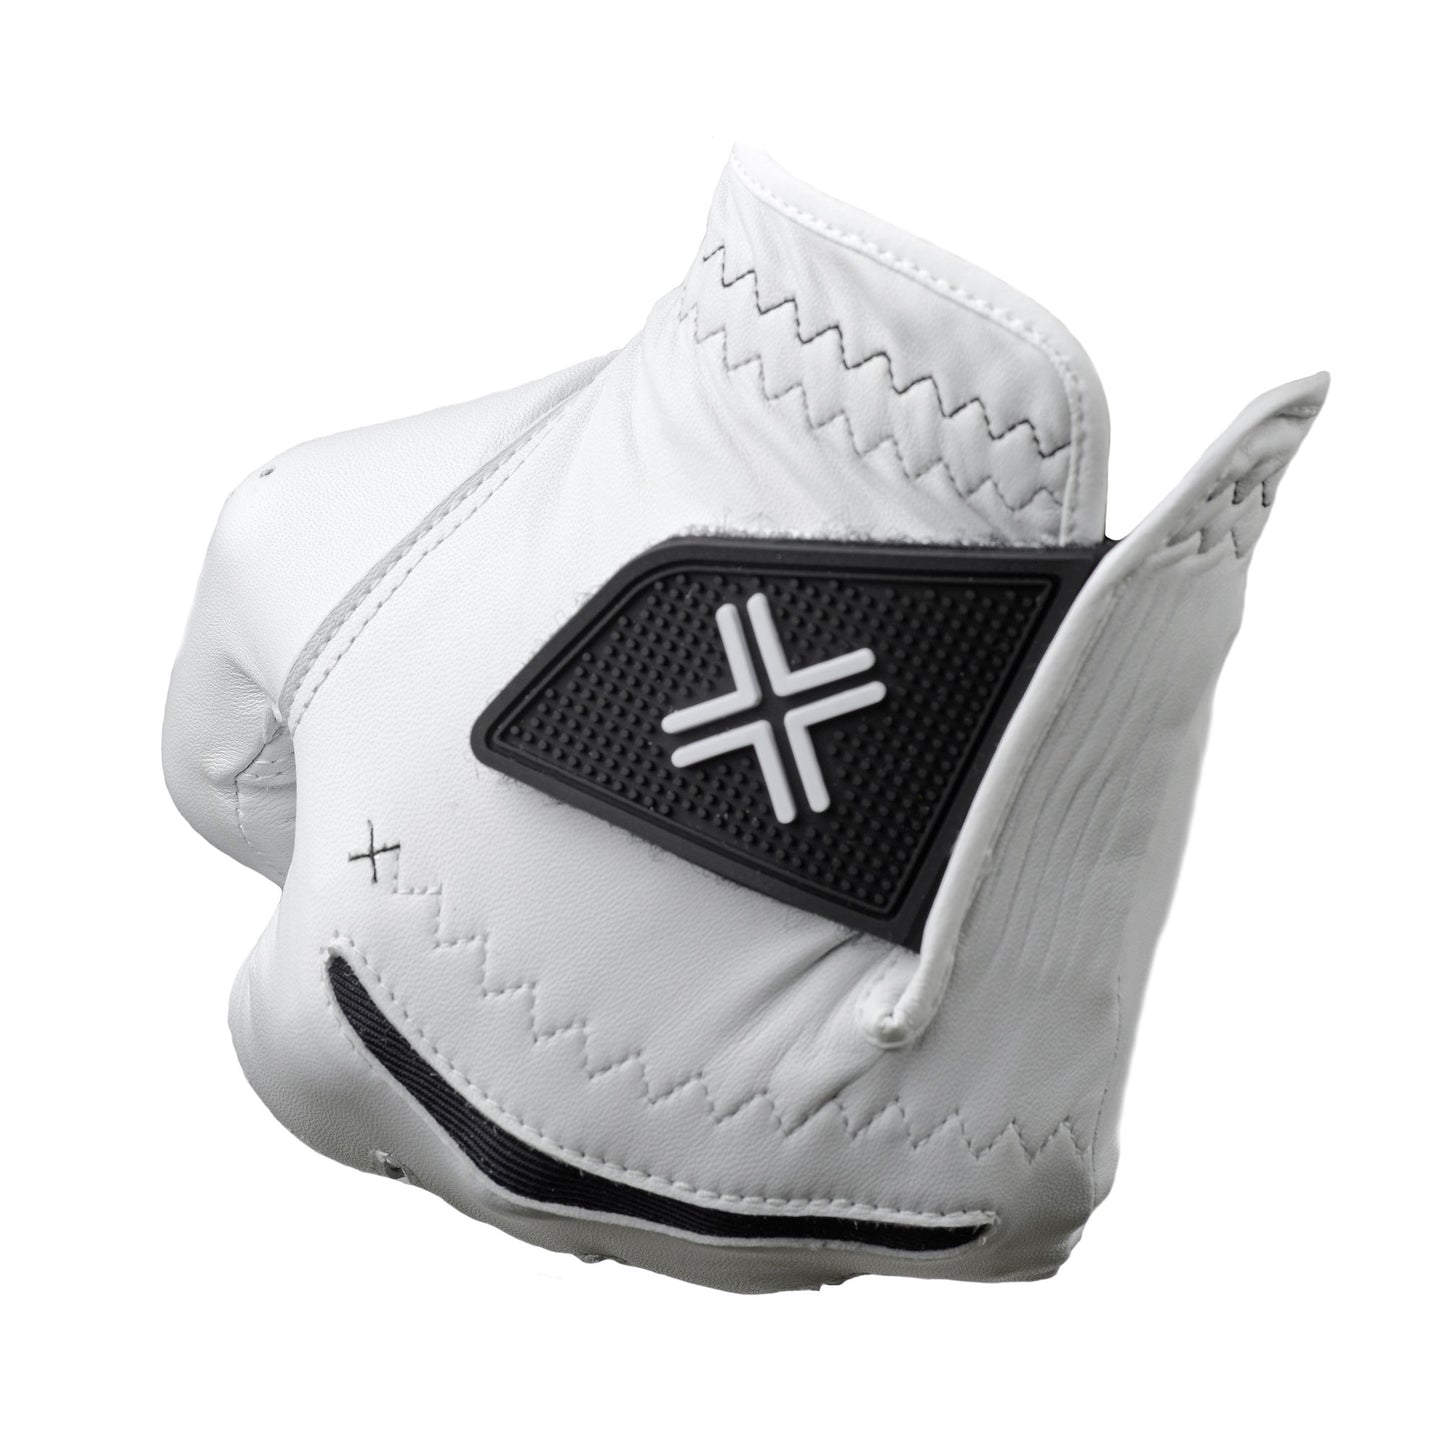 PAYNTR X-002 Golf Glove (LH) - Fist